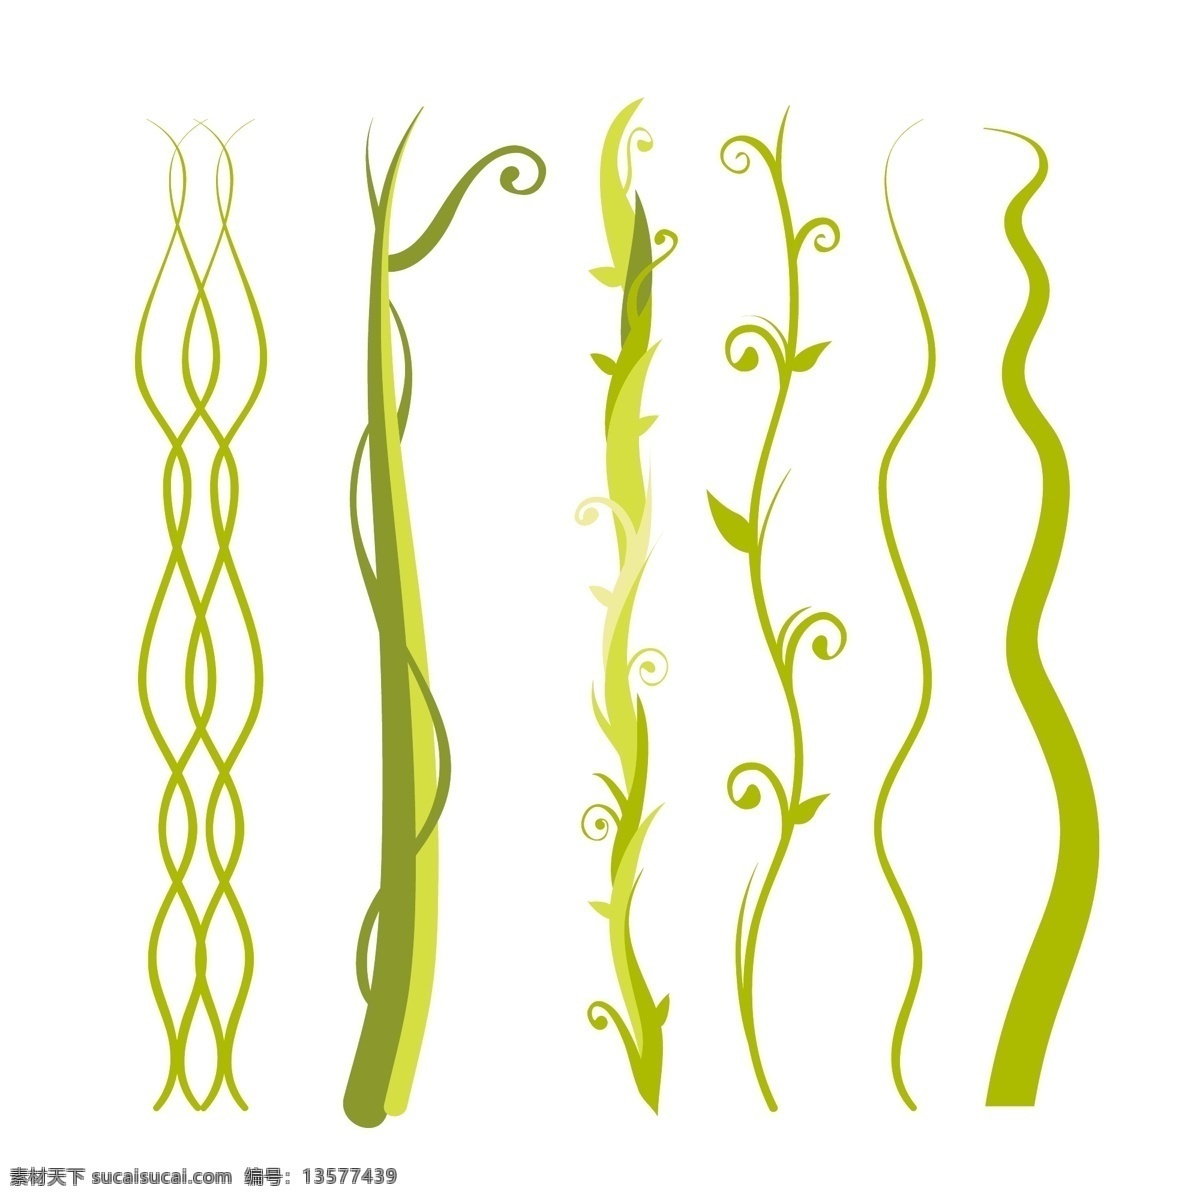 蔓藤 植物 生长 绿色 花草 缠绕 海草 生物世界